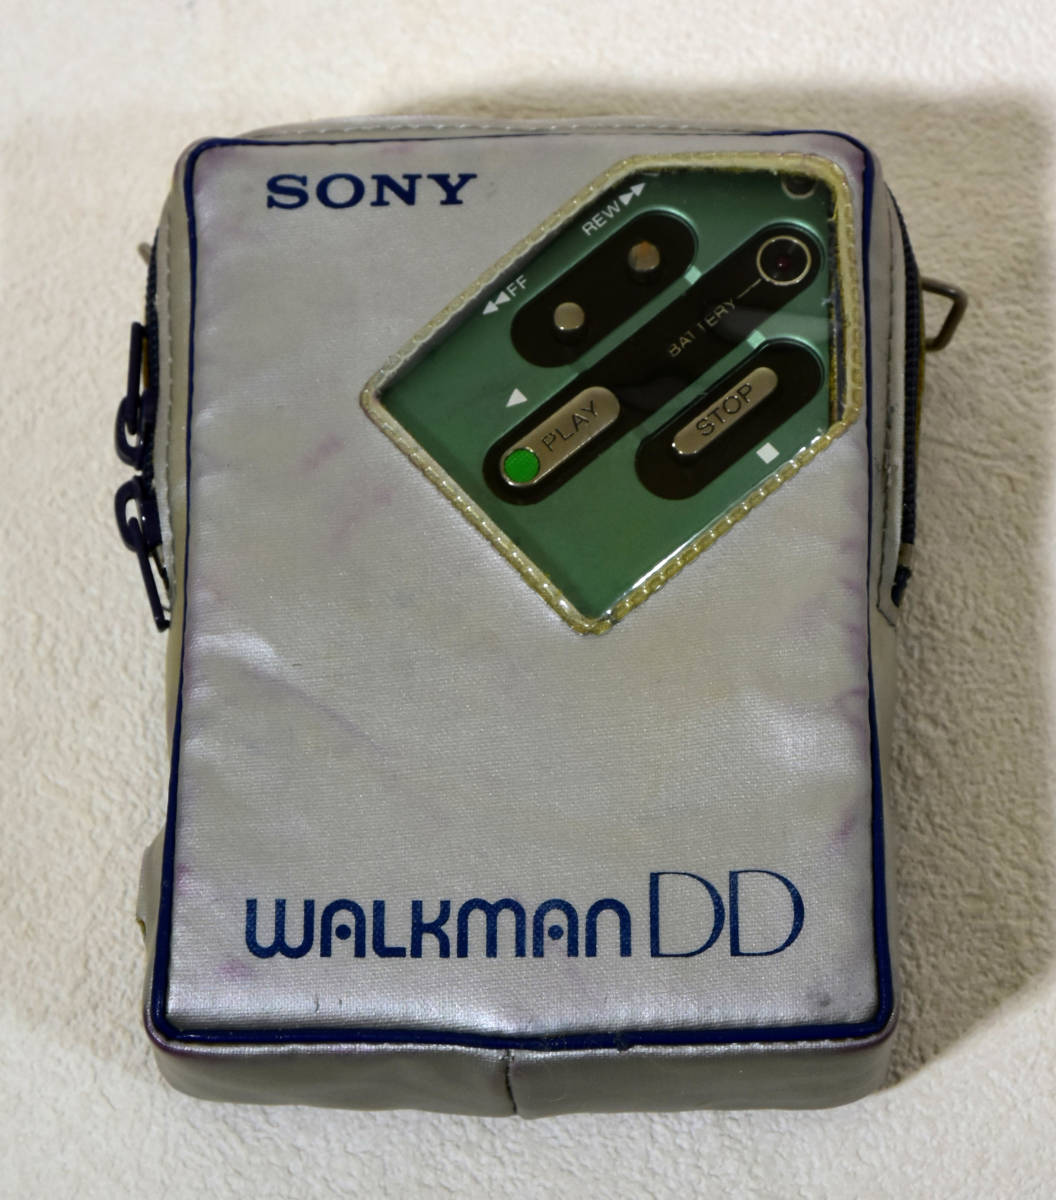 SONY WALKMAN DD WM-DD ウォークマン ポータブルカセットレコーダー 